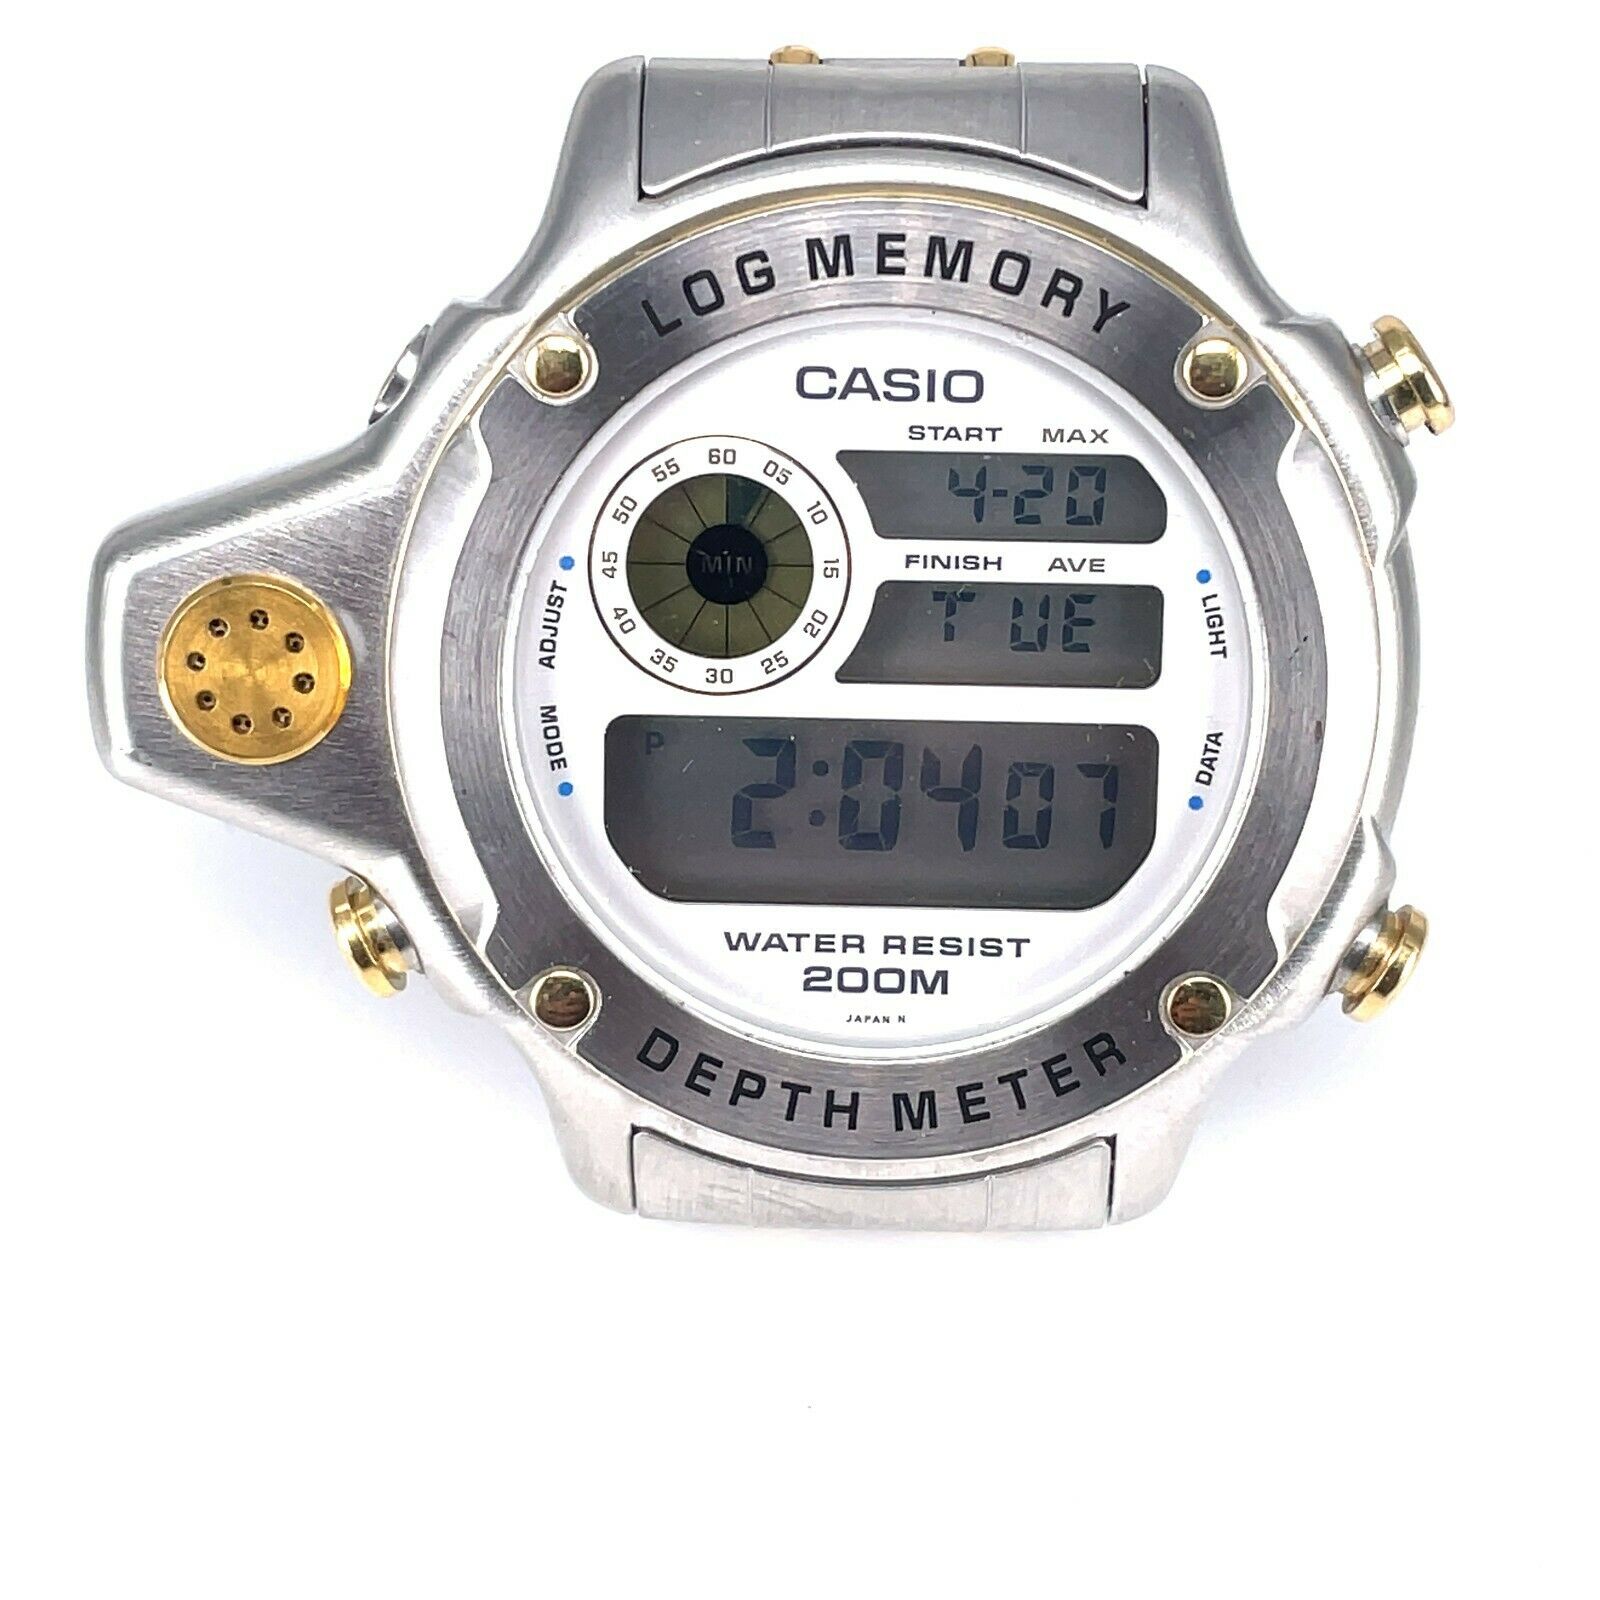 Casio dep-500 log memory depth meter divers watch 910 Two Tone